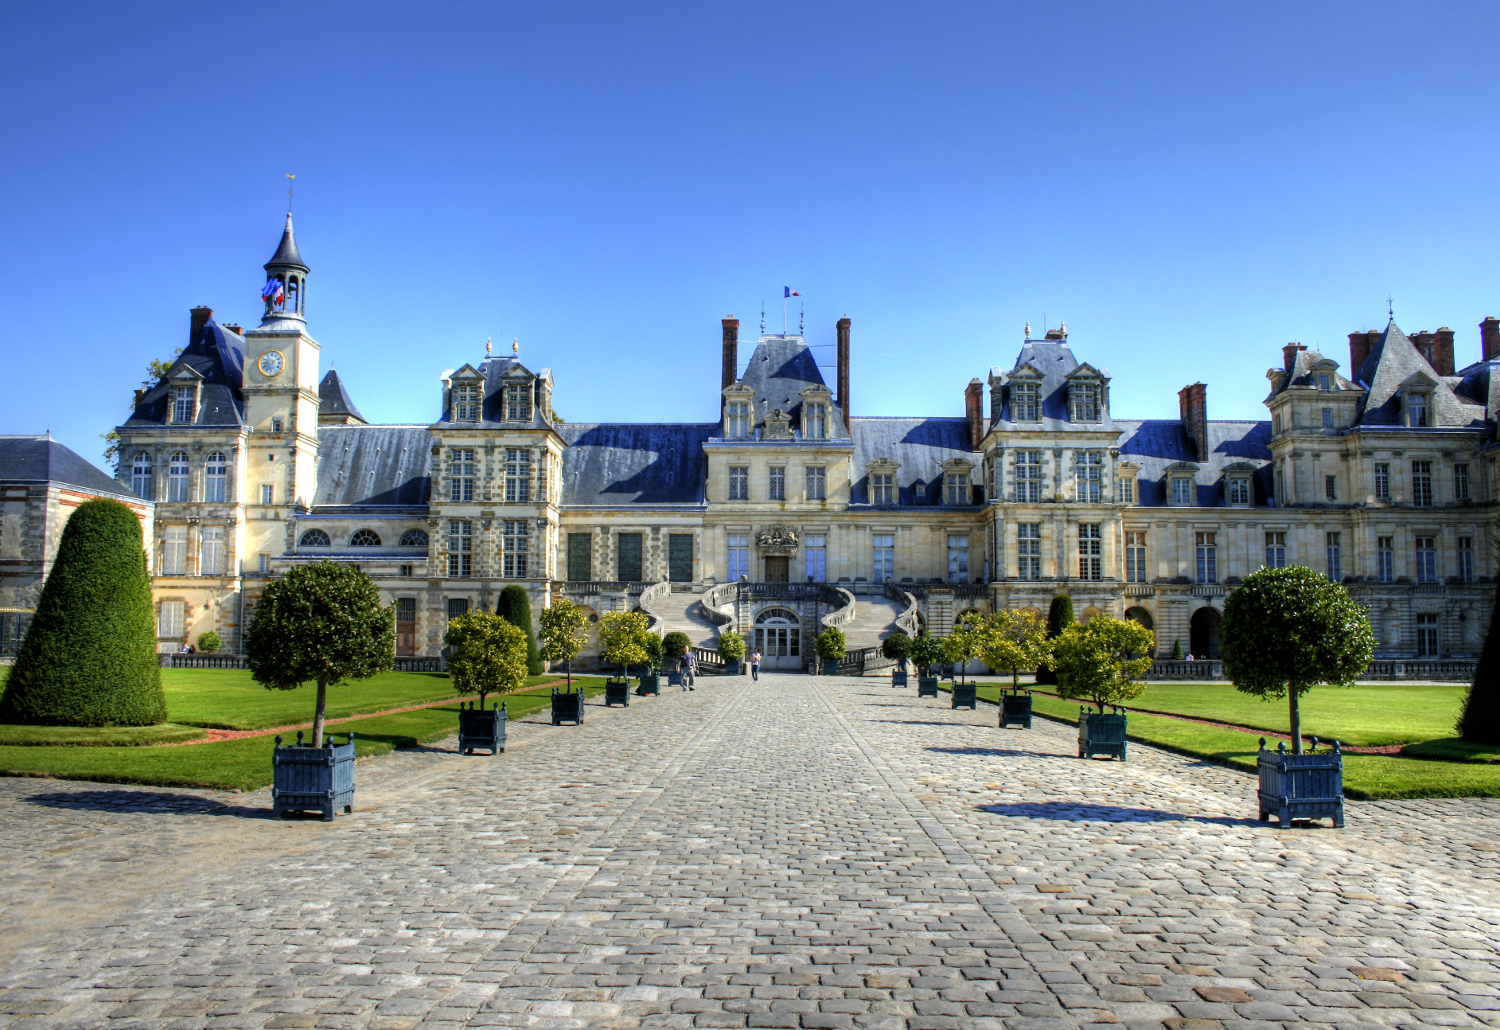 Chateau de Fontainebleau, #France #travel #best #photos and #places